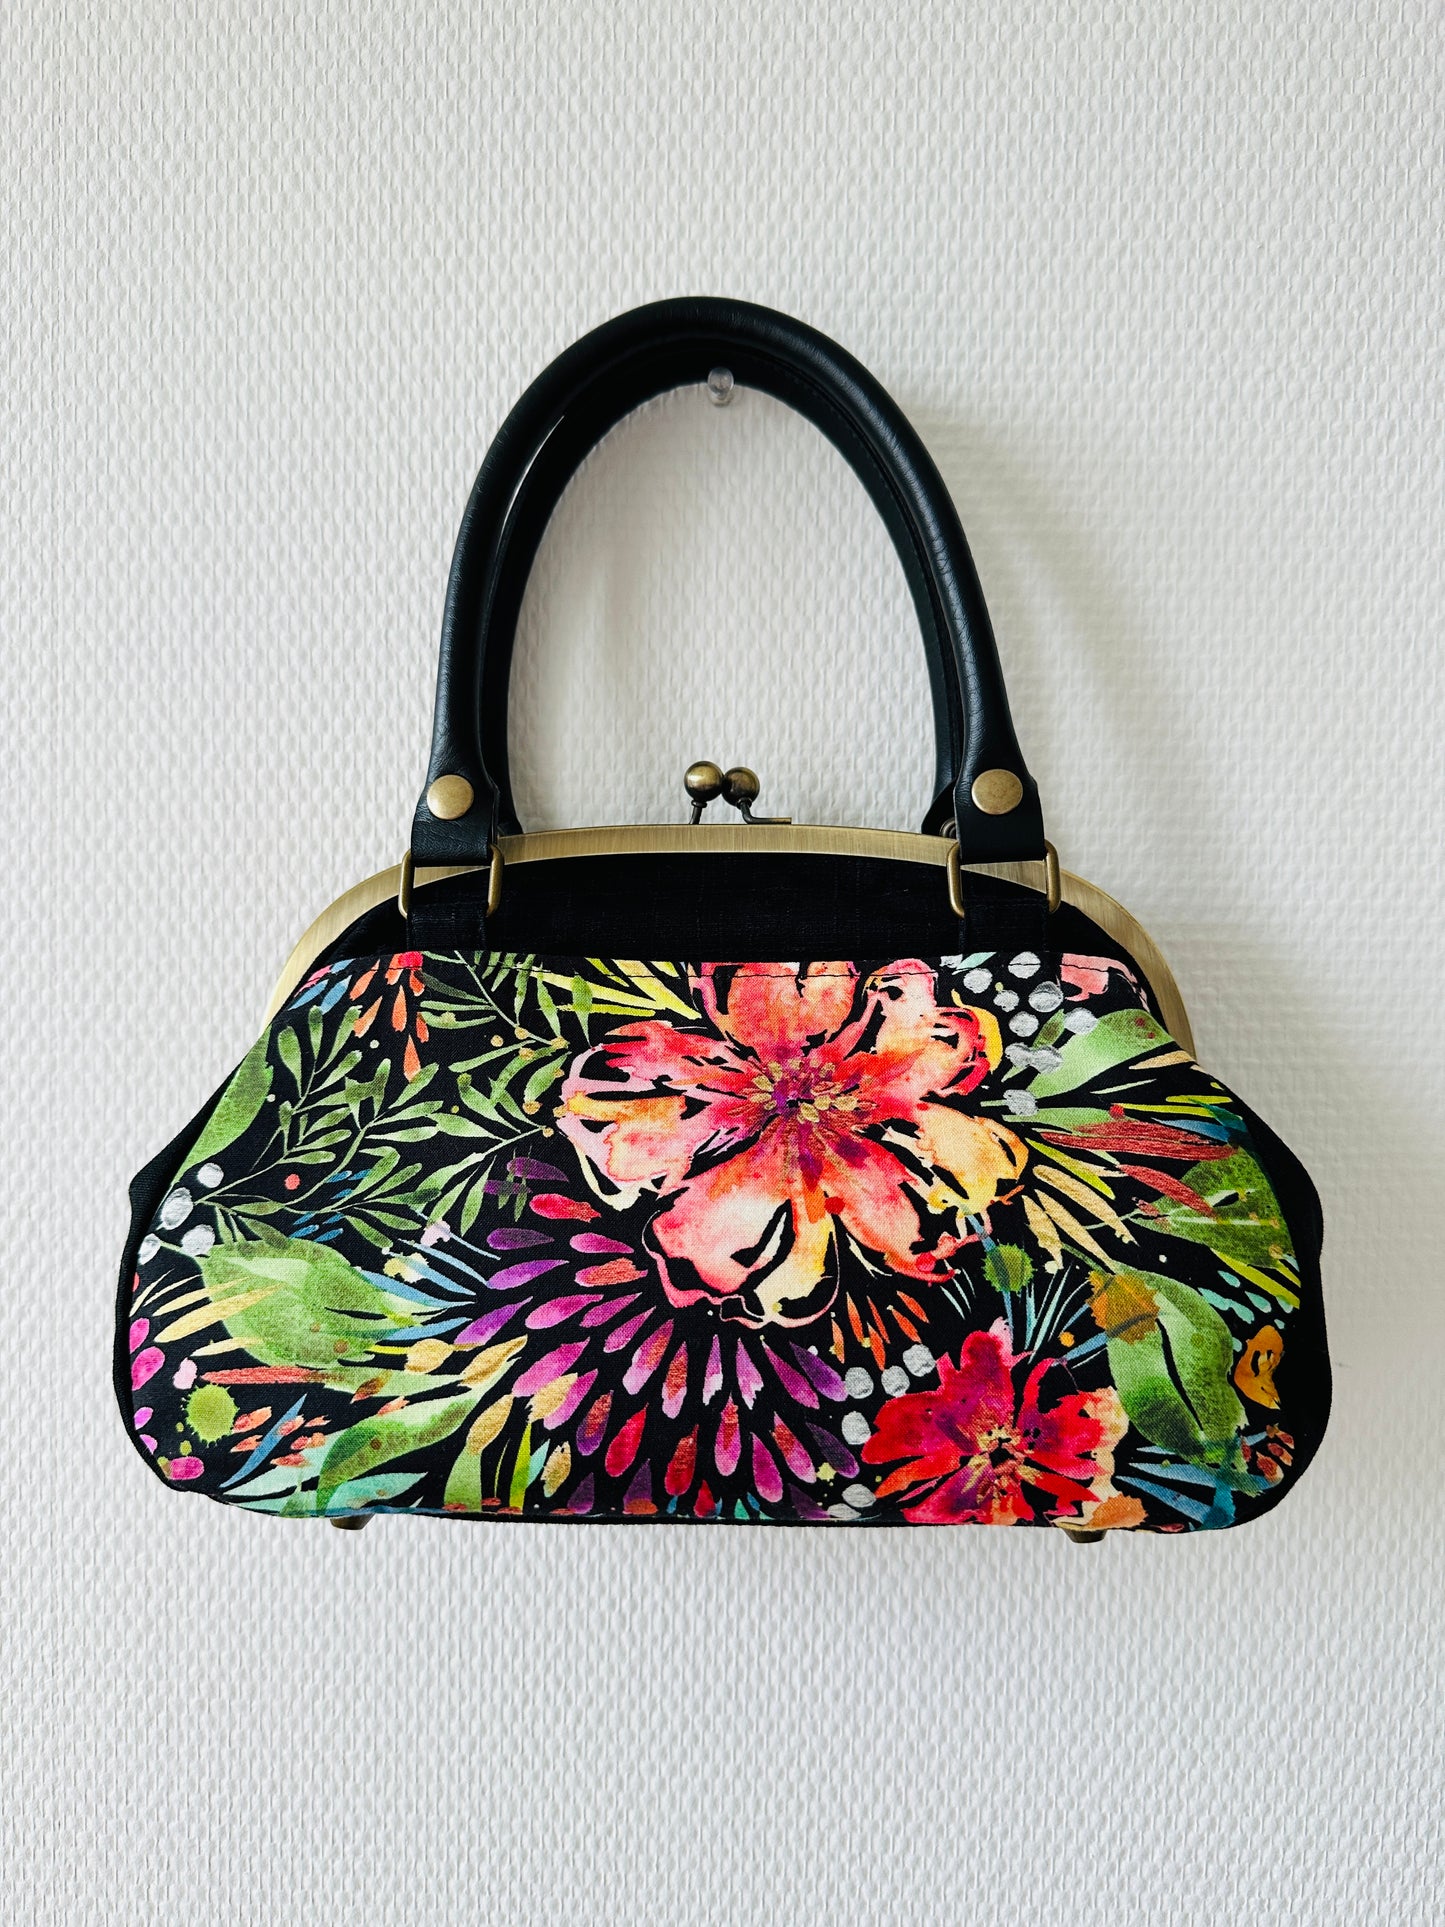 【Gamaguchi-en】 Handtas/botanische bloem, zwart, koppeling, zakje, Japanse tas, schoudertas, Japanse geschenken